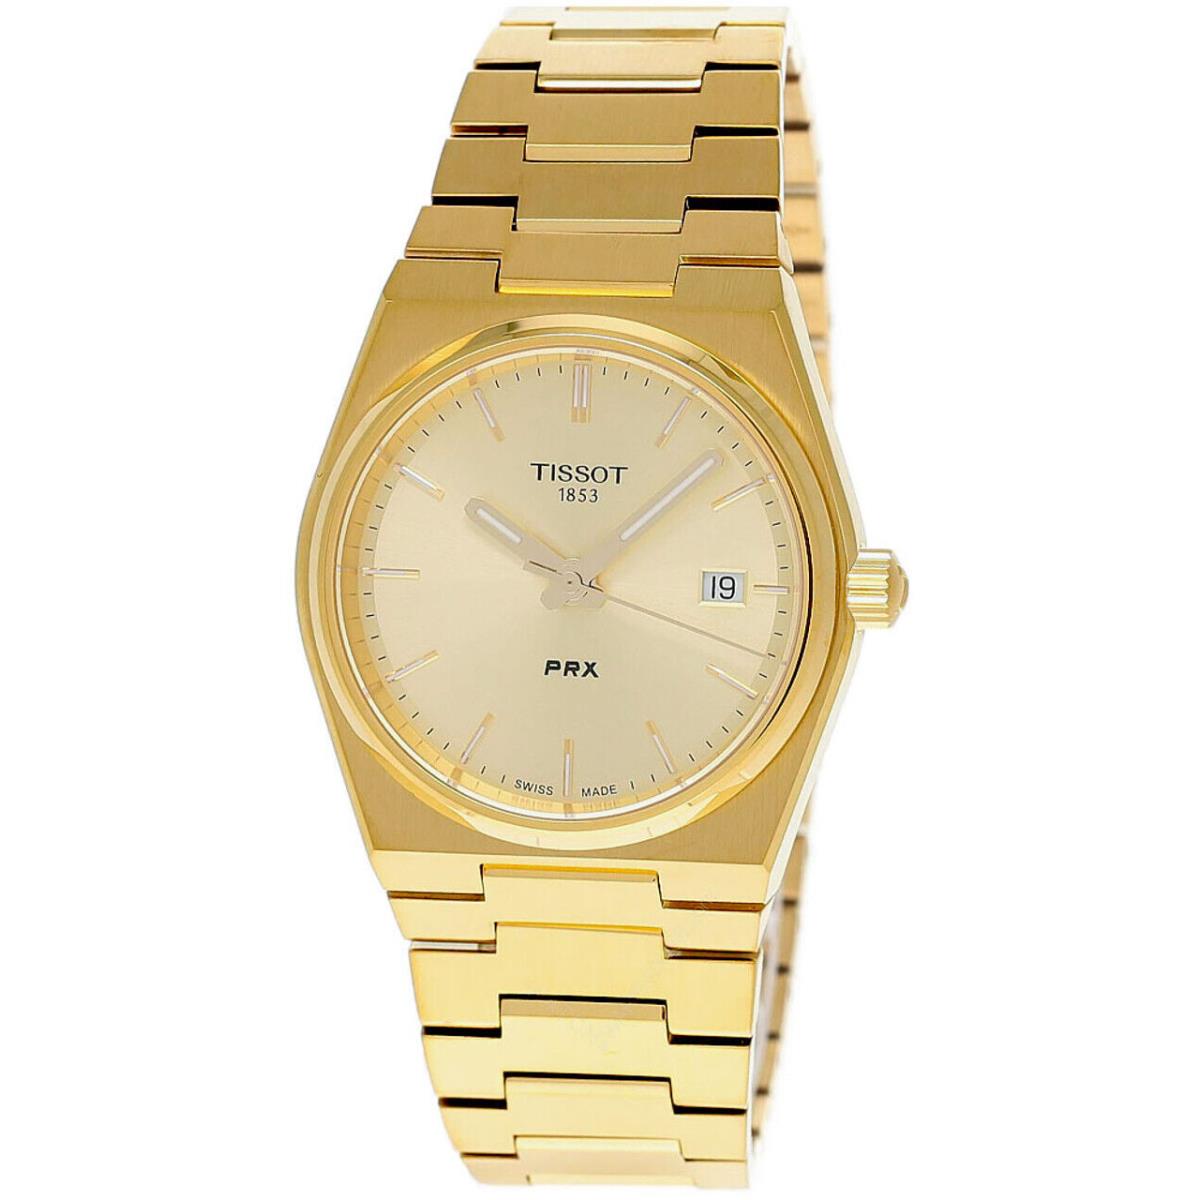 Tissot Prx 35MM Qtz S-steel Gold Dial Unisex Watch T1372103302100 - Gold Dial, Gold Band, Gold Bezel